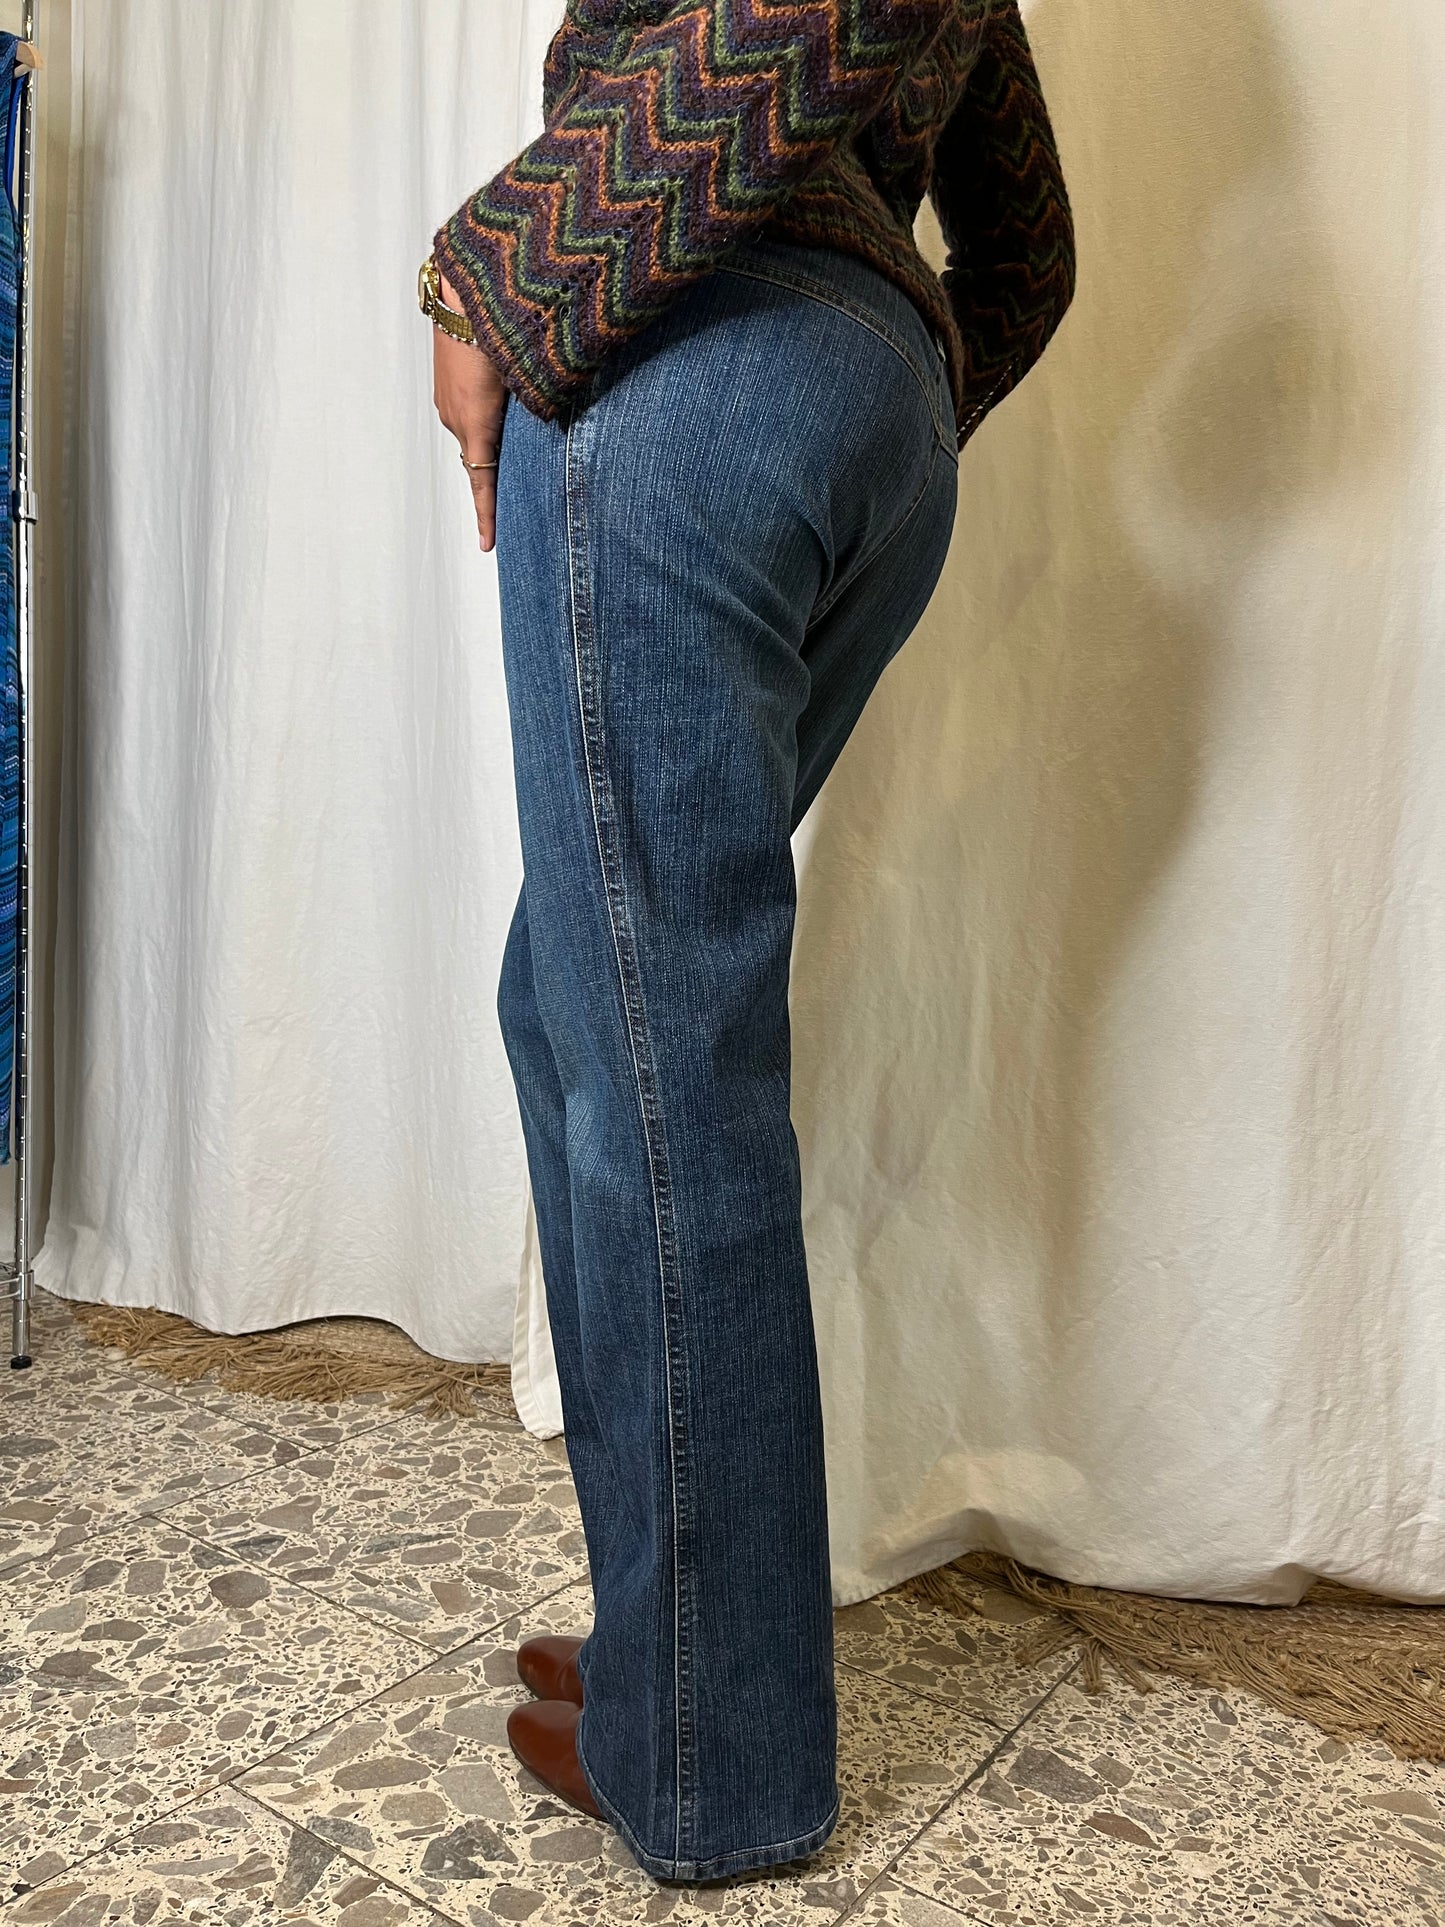 Moschino bootcut džíny